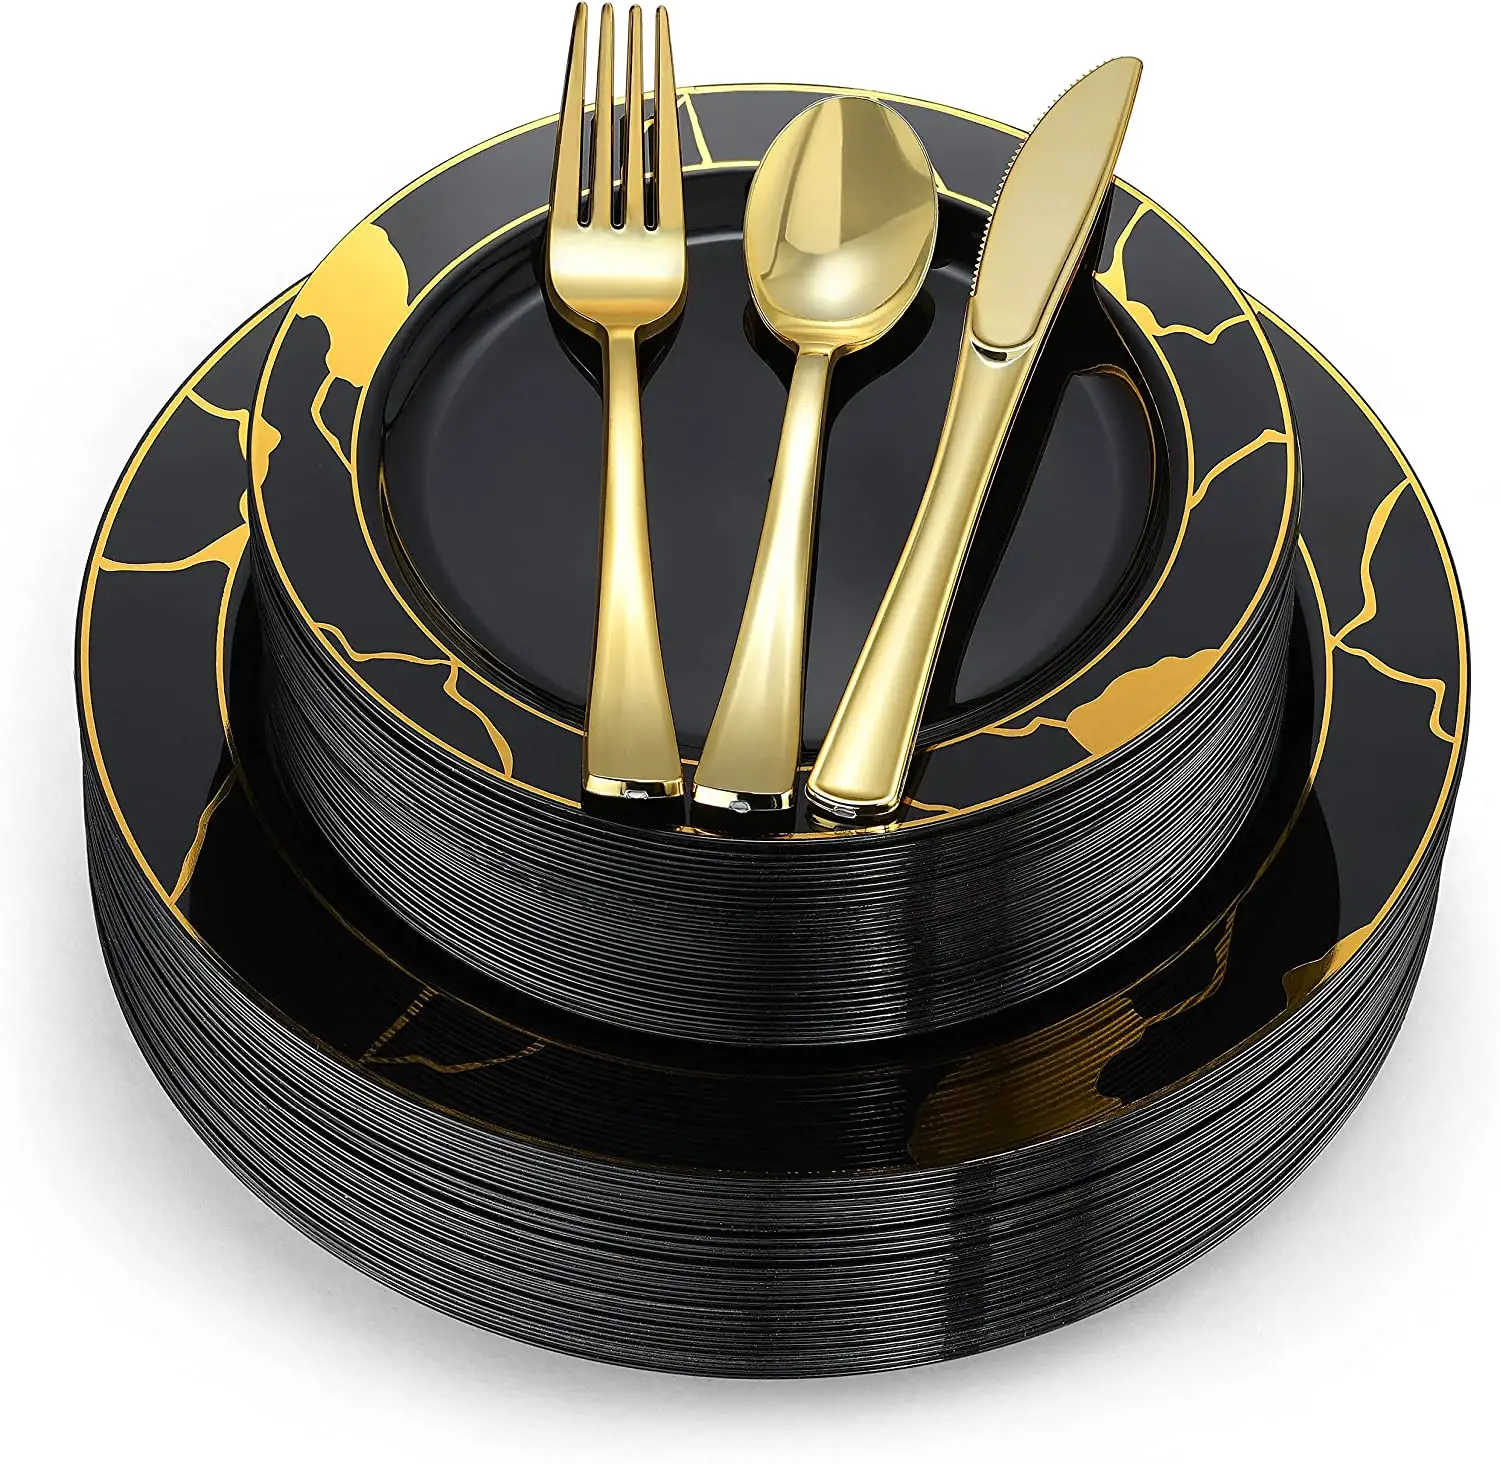 Assiettes noires et dorées Ensembles de vaisselle en plastique Assiettes avec argenterie en plastique Fourchettes Cuillères Couteaux tasses et serviettes